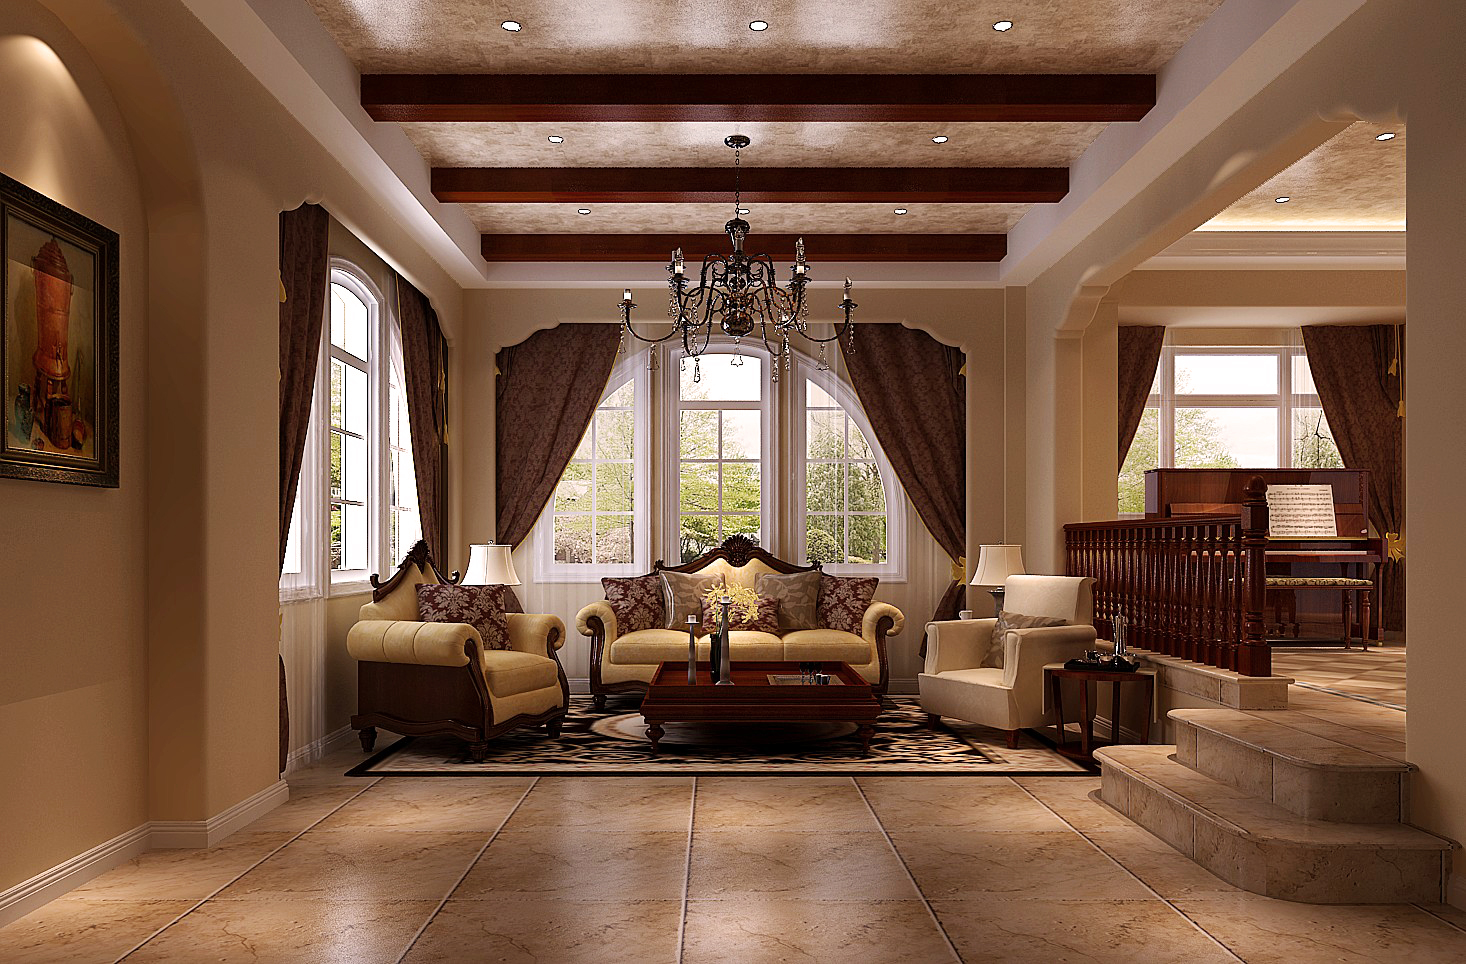 别墅 托斯卡纳 80后 小资 白领 客厅图片来自沙漠雪雨在天竺新新家园 22万托斯卡纳别墅的分享